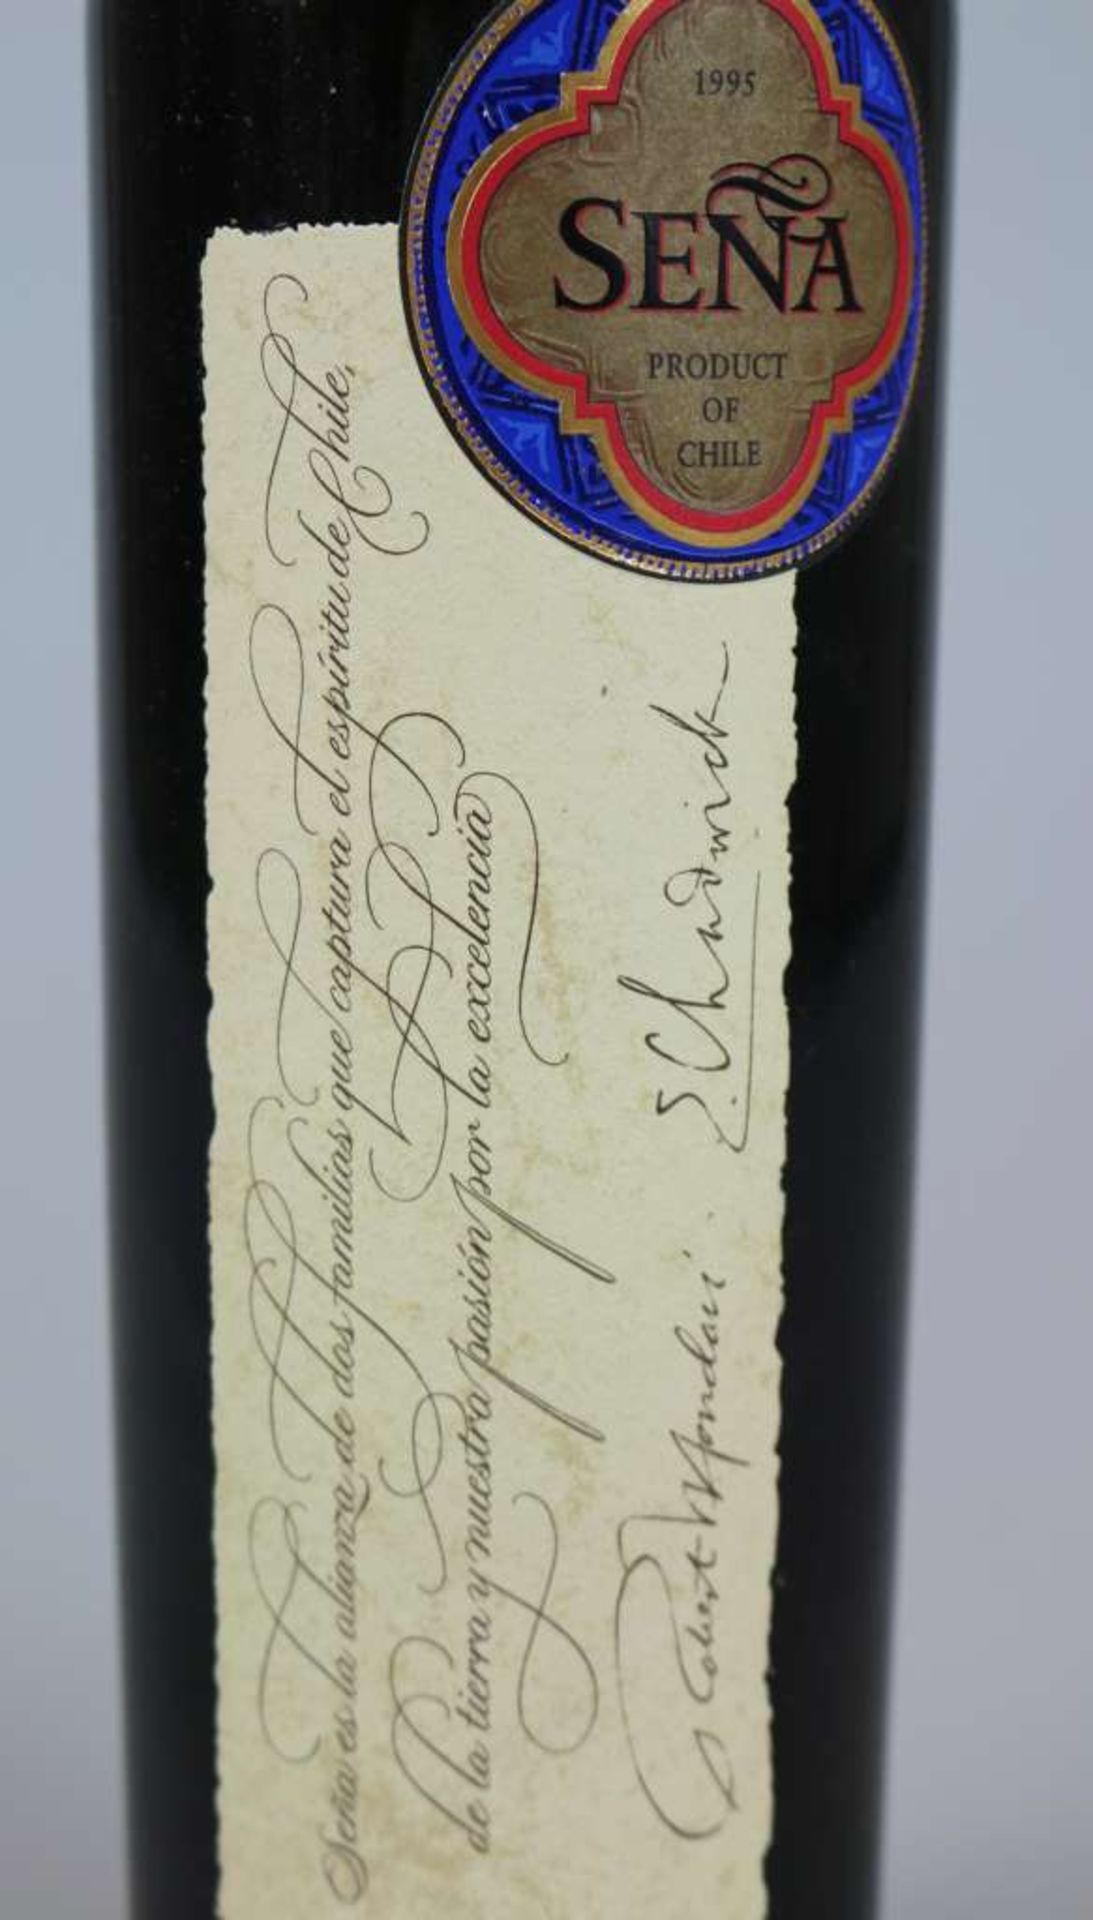 Rotwein, 6 Flaschen Sena, Vina Errazuriz/ Mondavi, Aconcagua Valley Chile, 1995, 0,75 L. Der Wein - Bild 3 aus 5